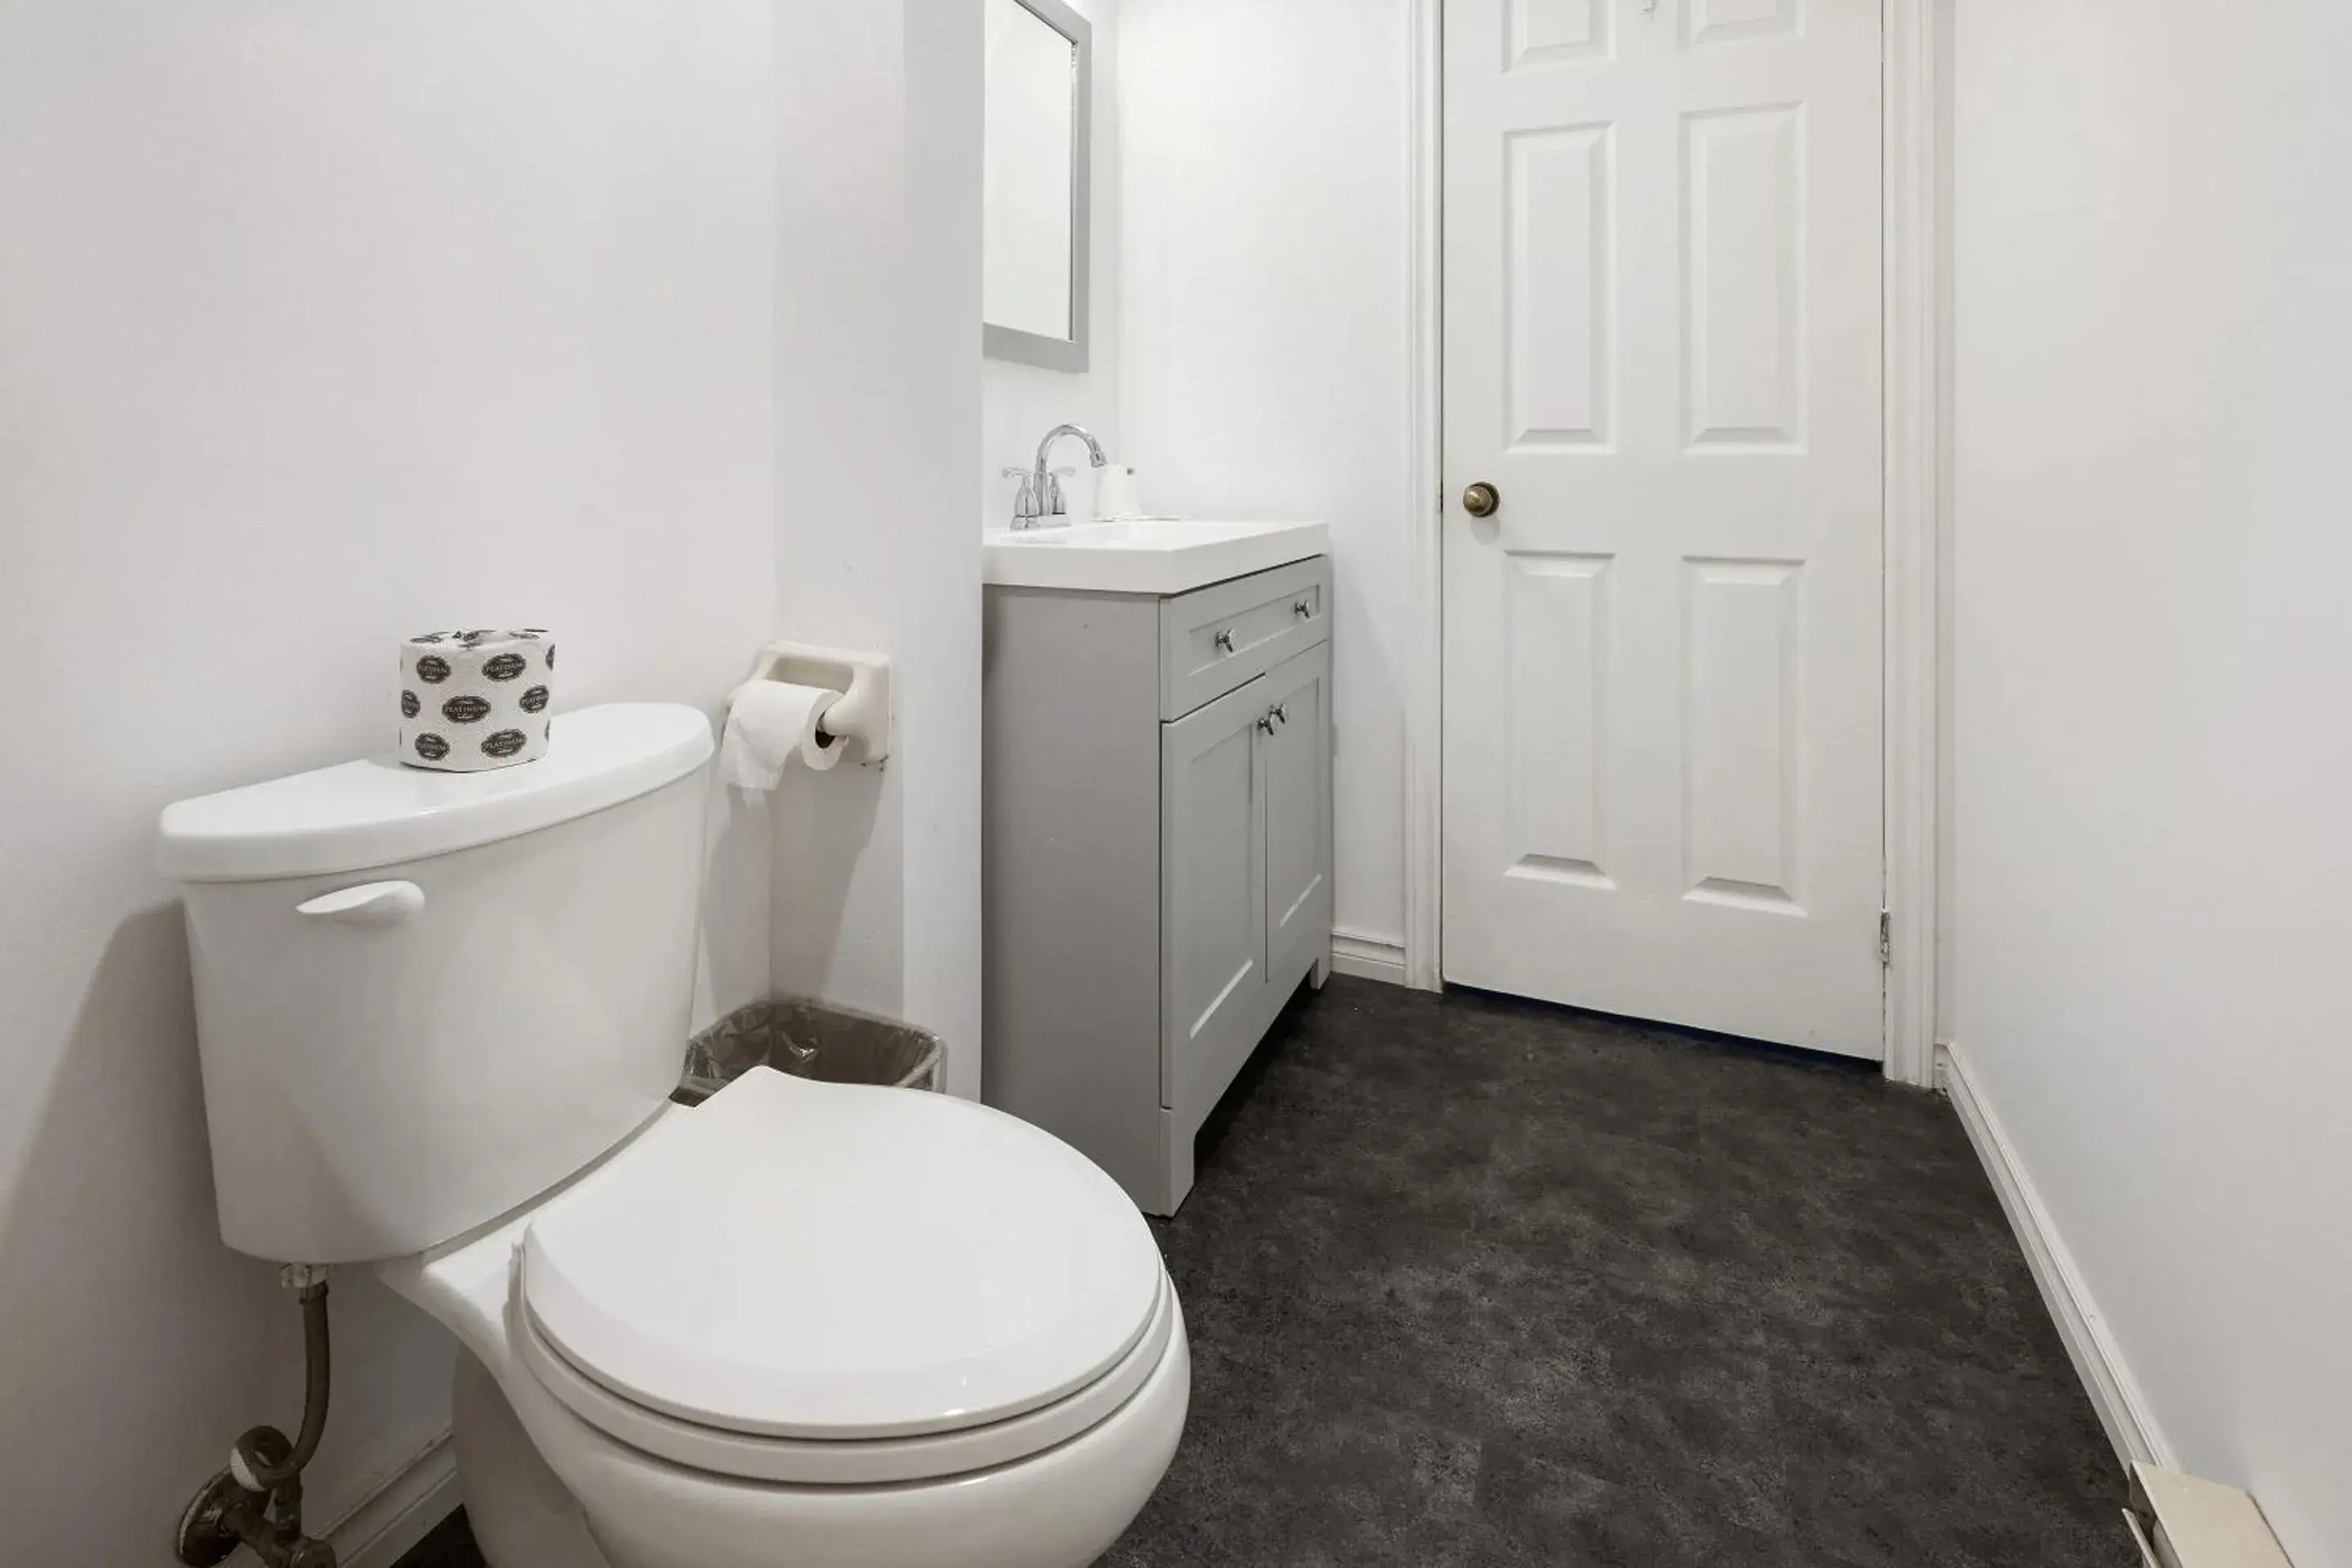 Bathroom in First Canada Hotel Cornwall Hwy 401 ON